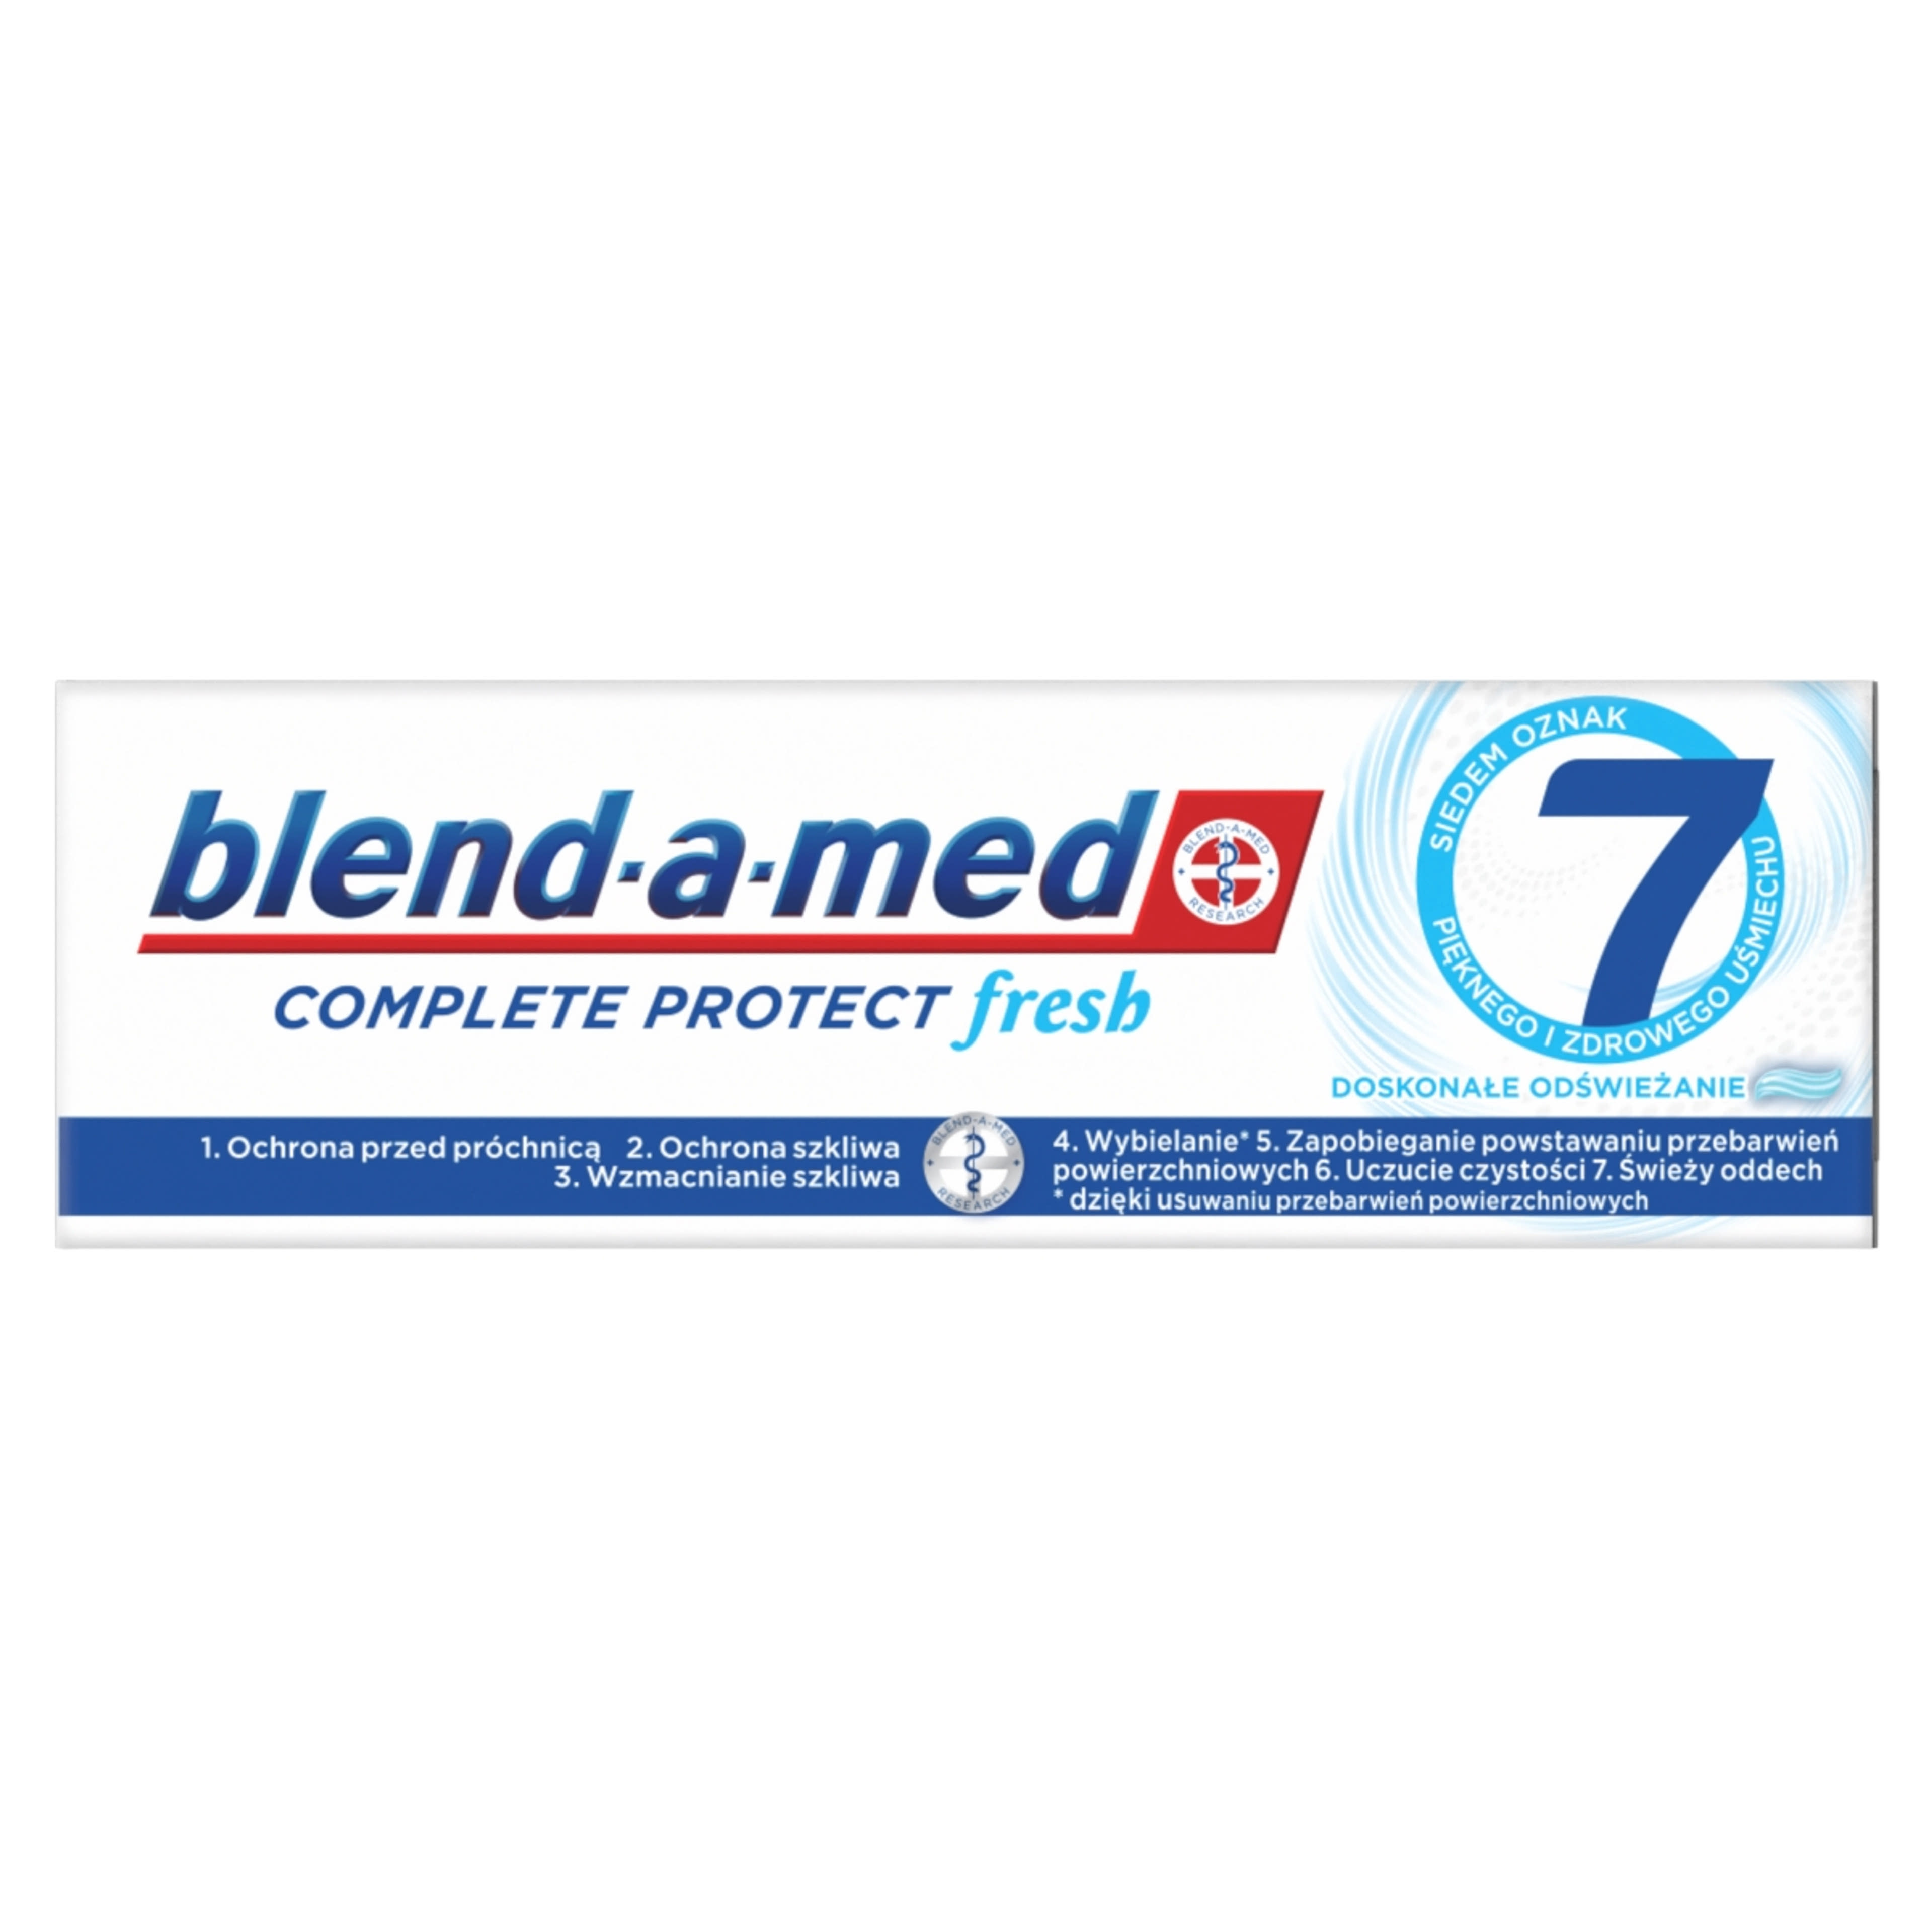 Blend-A-Med Complete Protect 7 extra fresh fogkrém - 75 ml